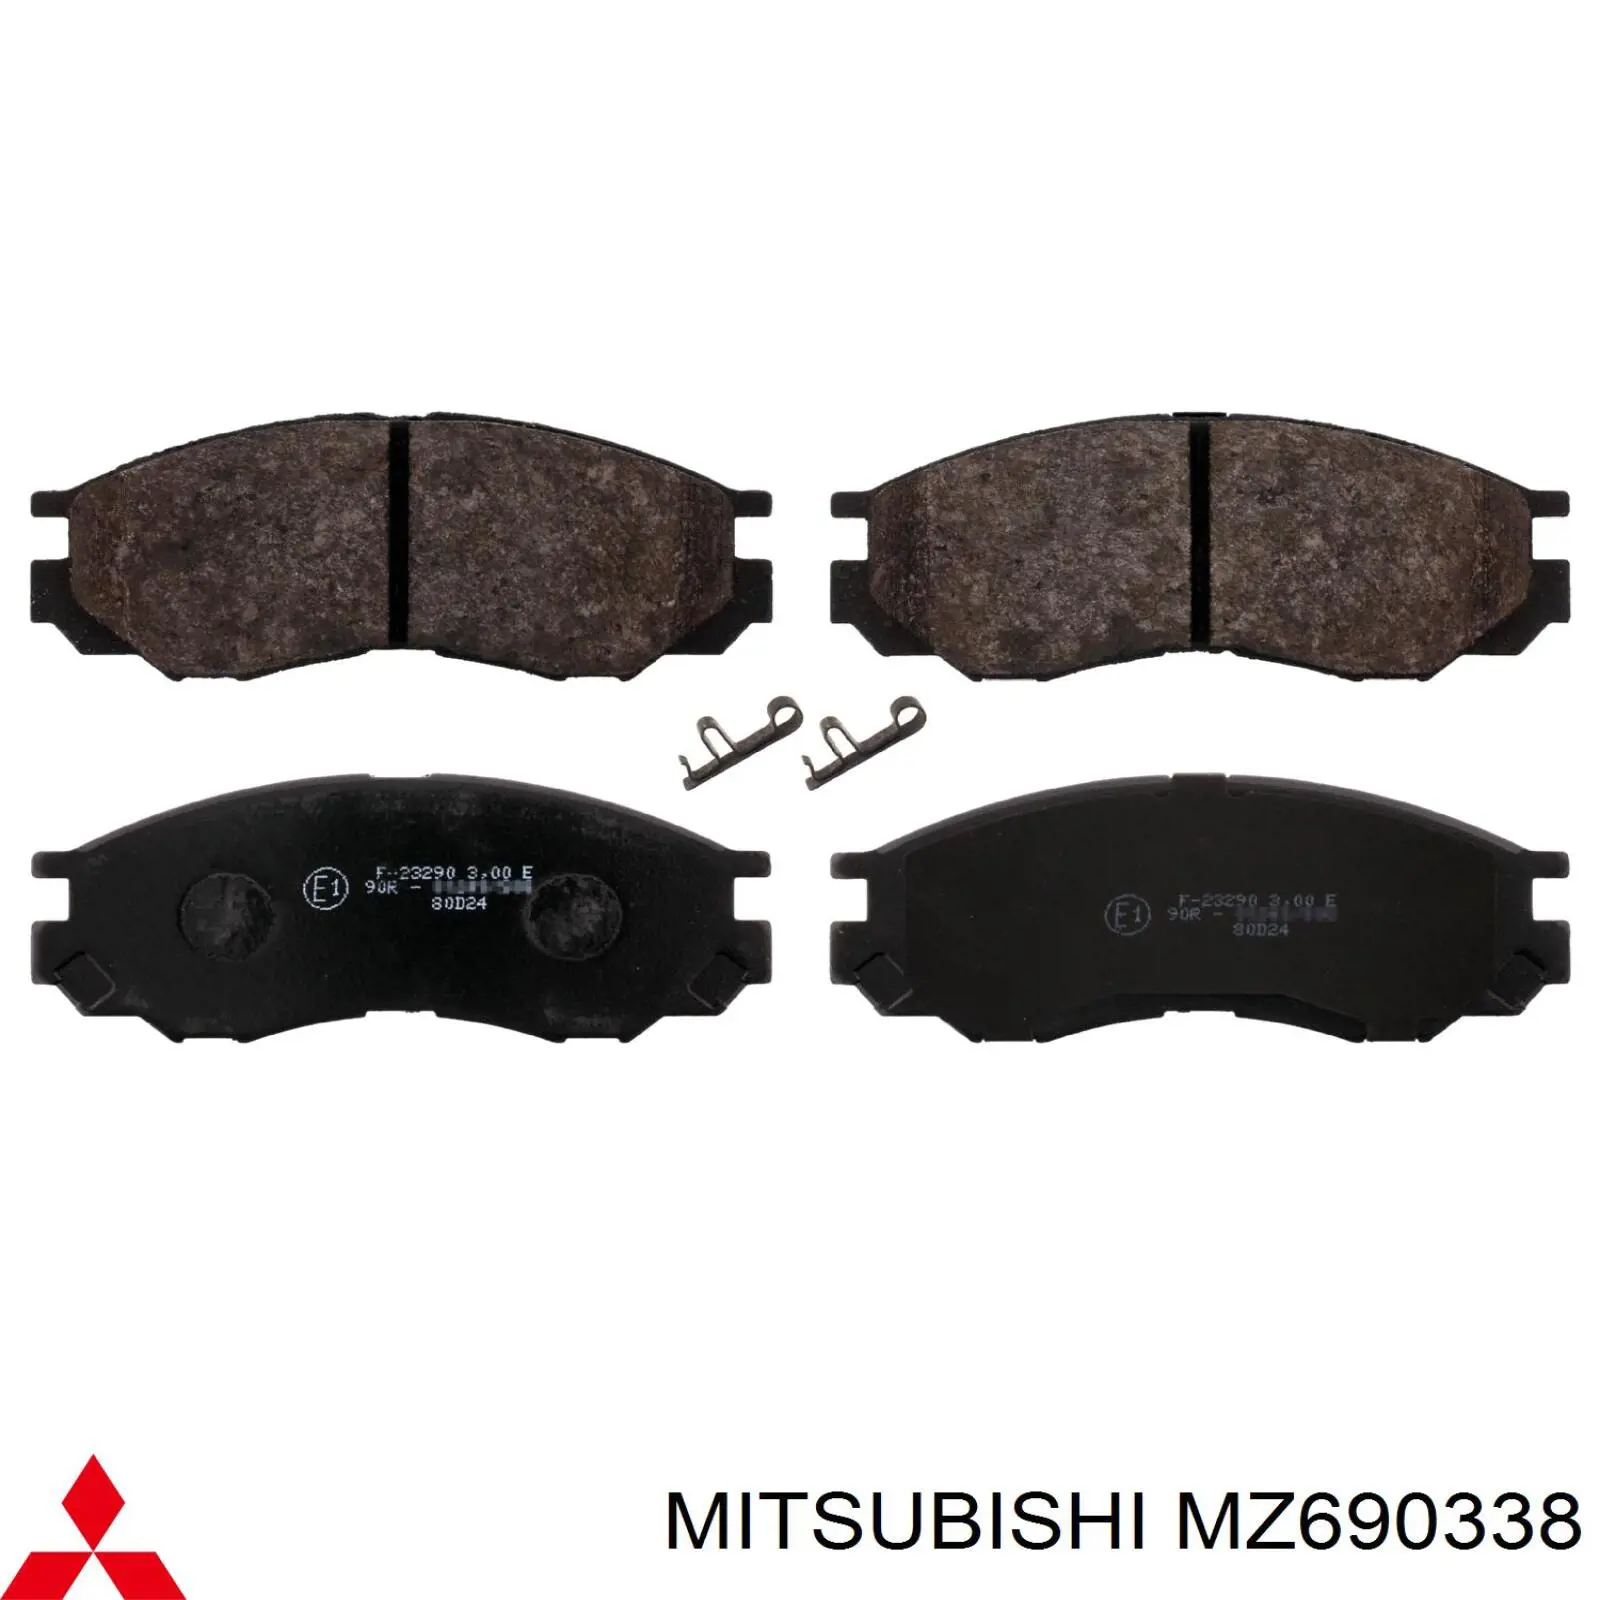 MZ690338 Mitsubishi колодки тормозные передние дисковые